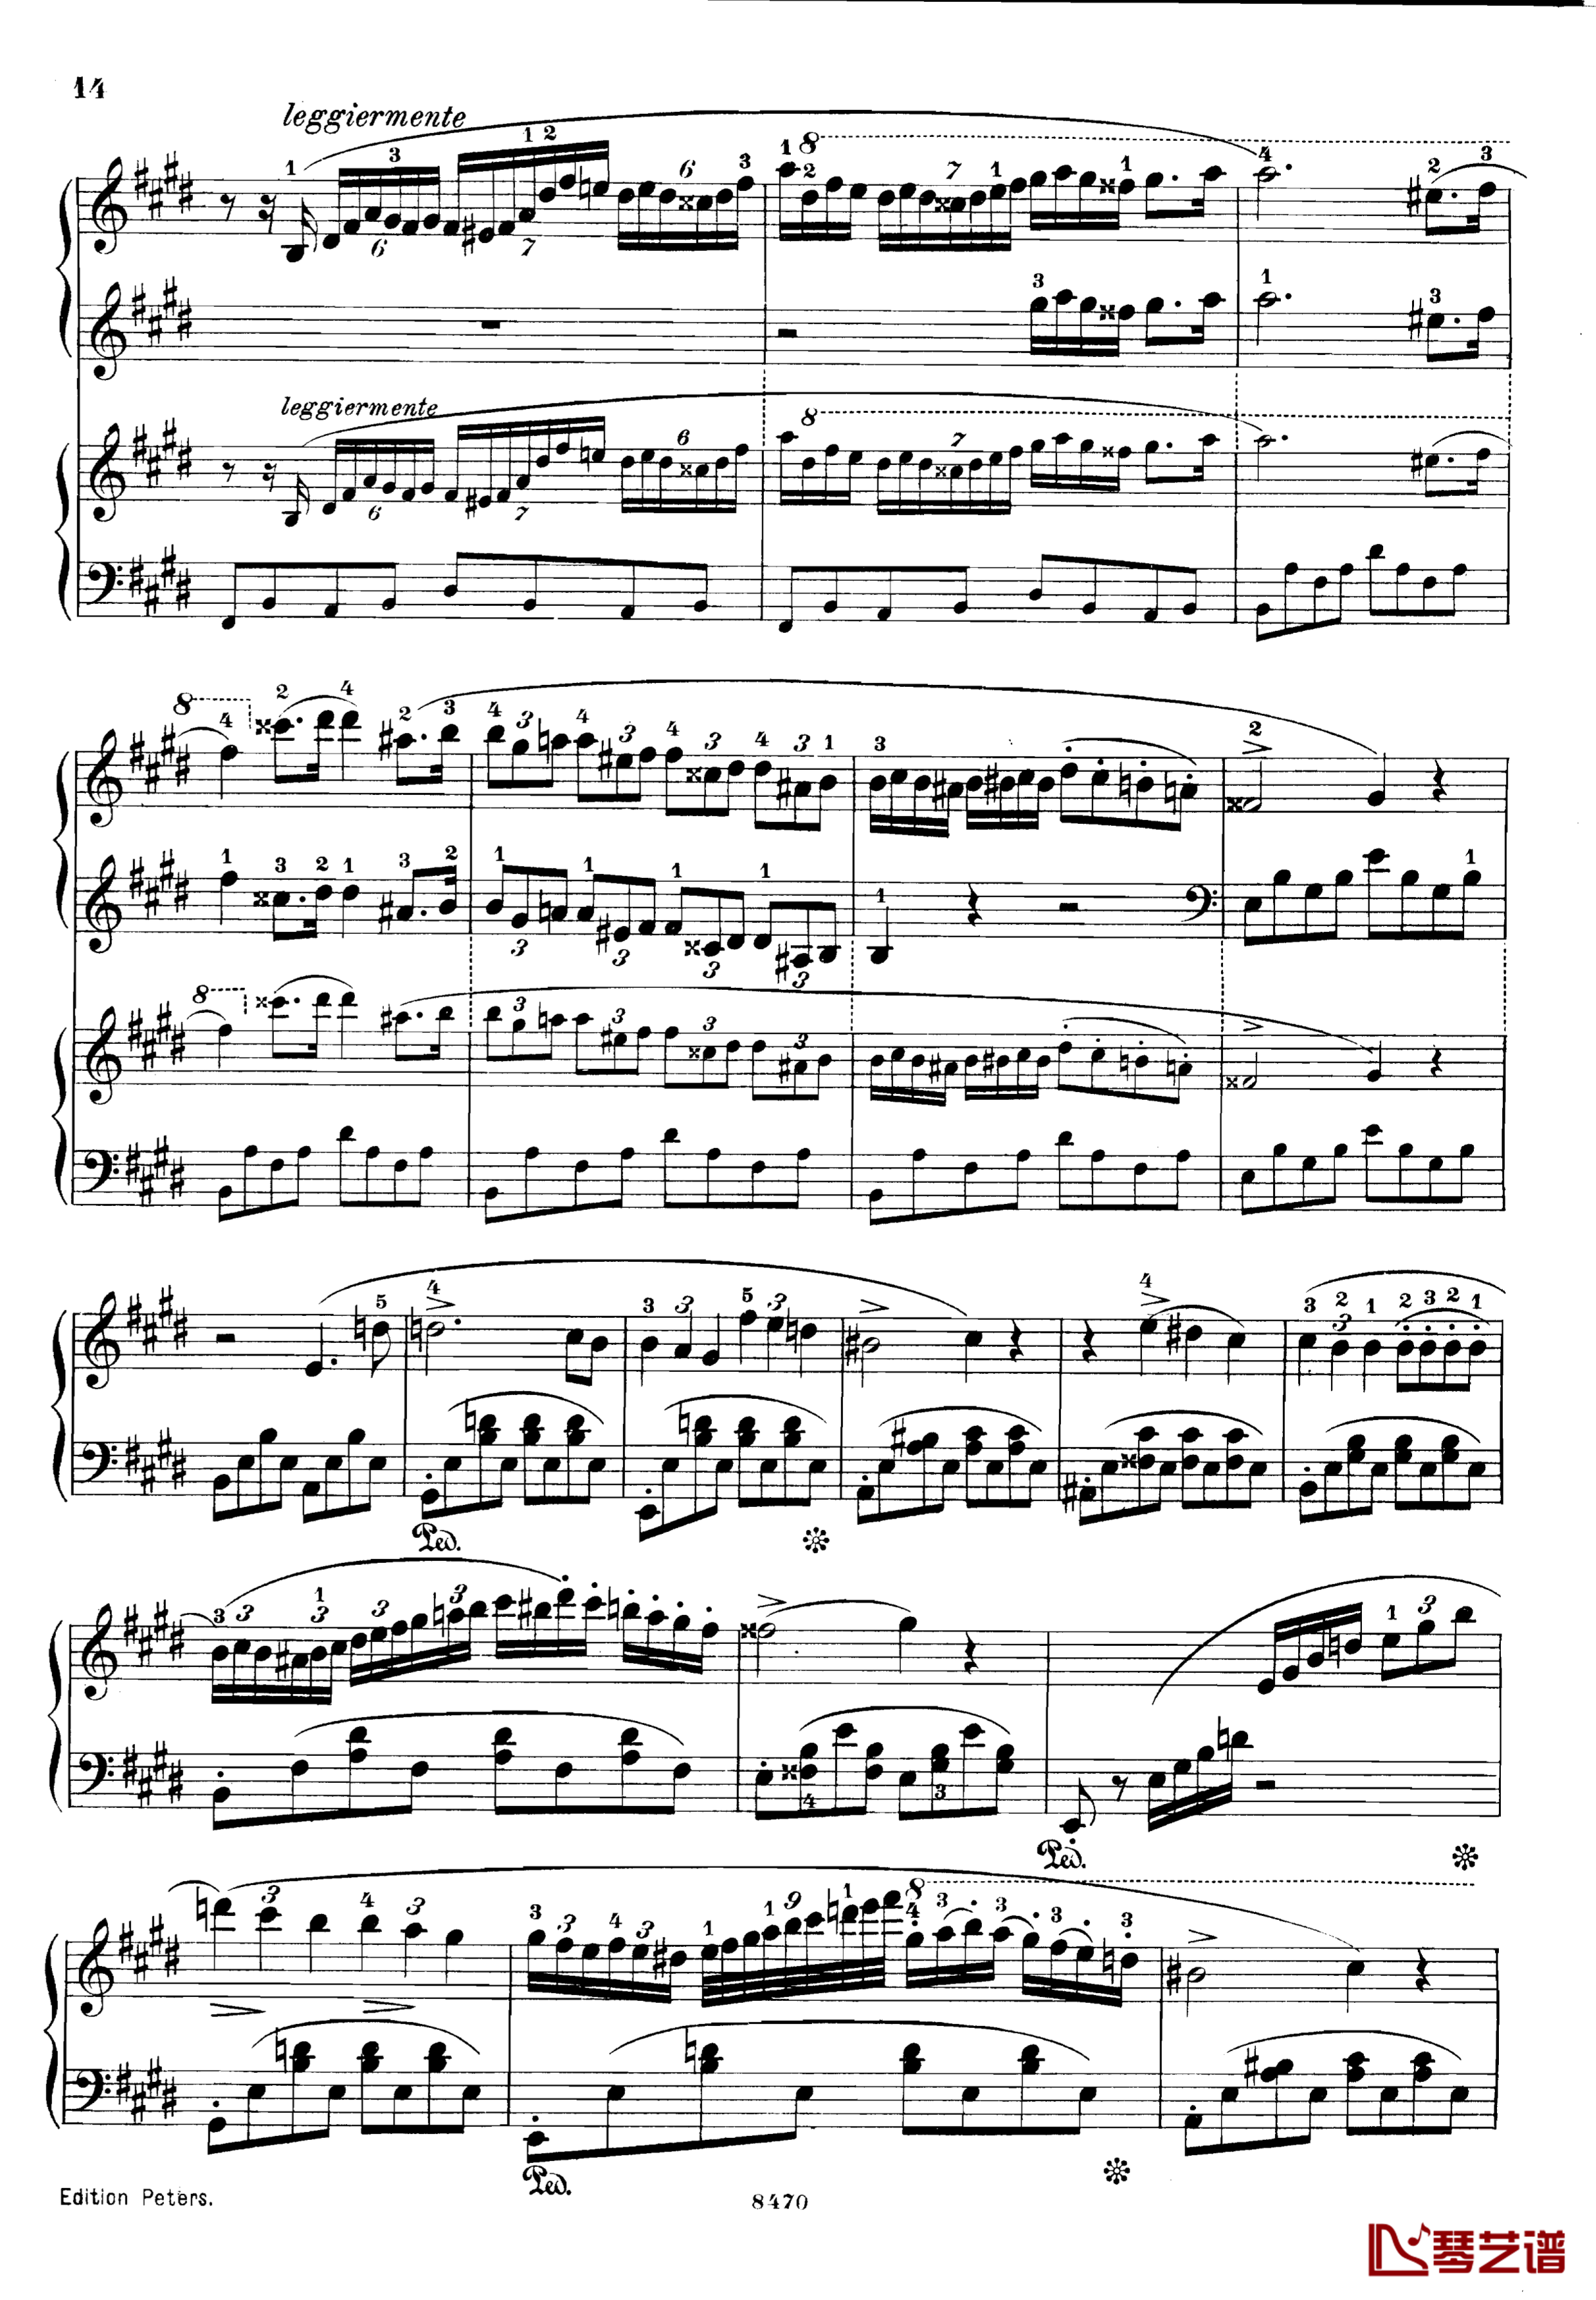 升c小调第三钢琴协奏曲Op.55钢琴谱-克里斯蒂安-里斯14